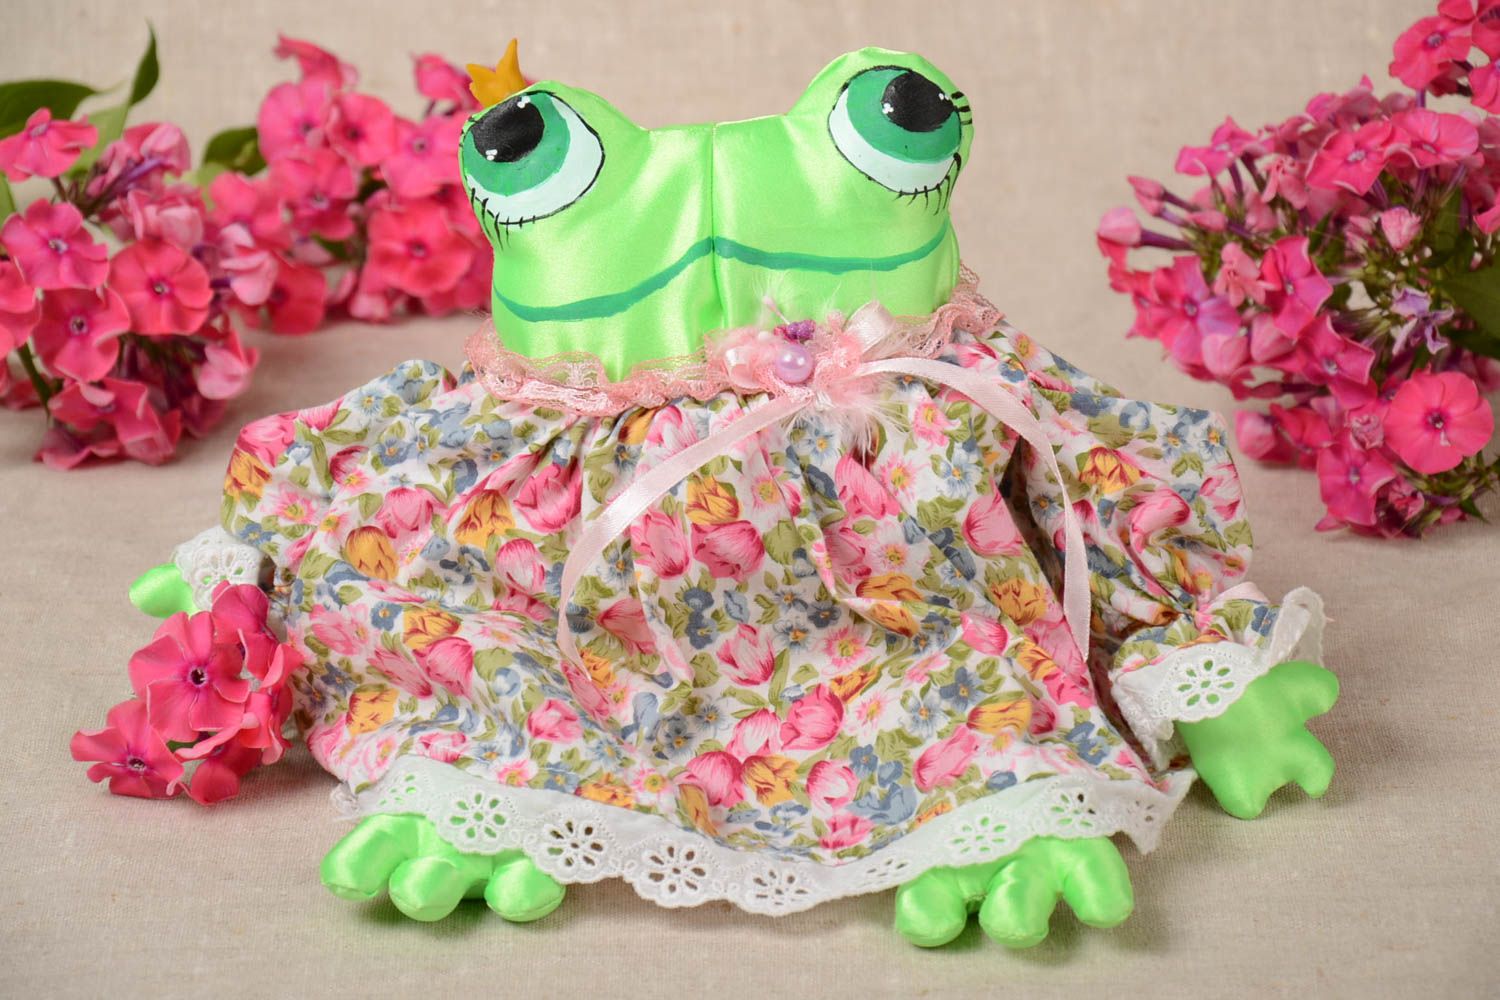 Игрушка лягушка мягкая в платье разноцветная небольшая оригинальная хэнд мейд фото 1